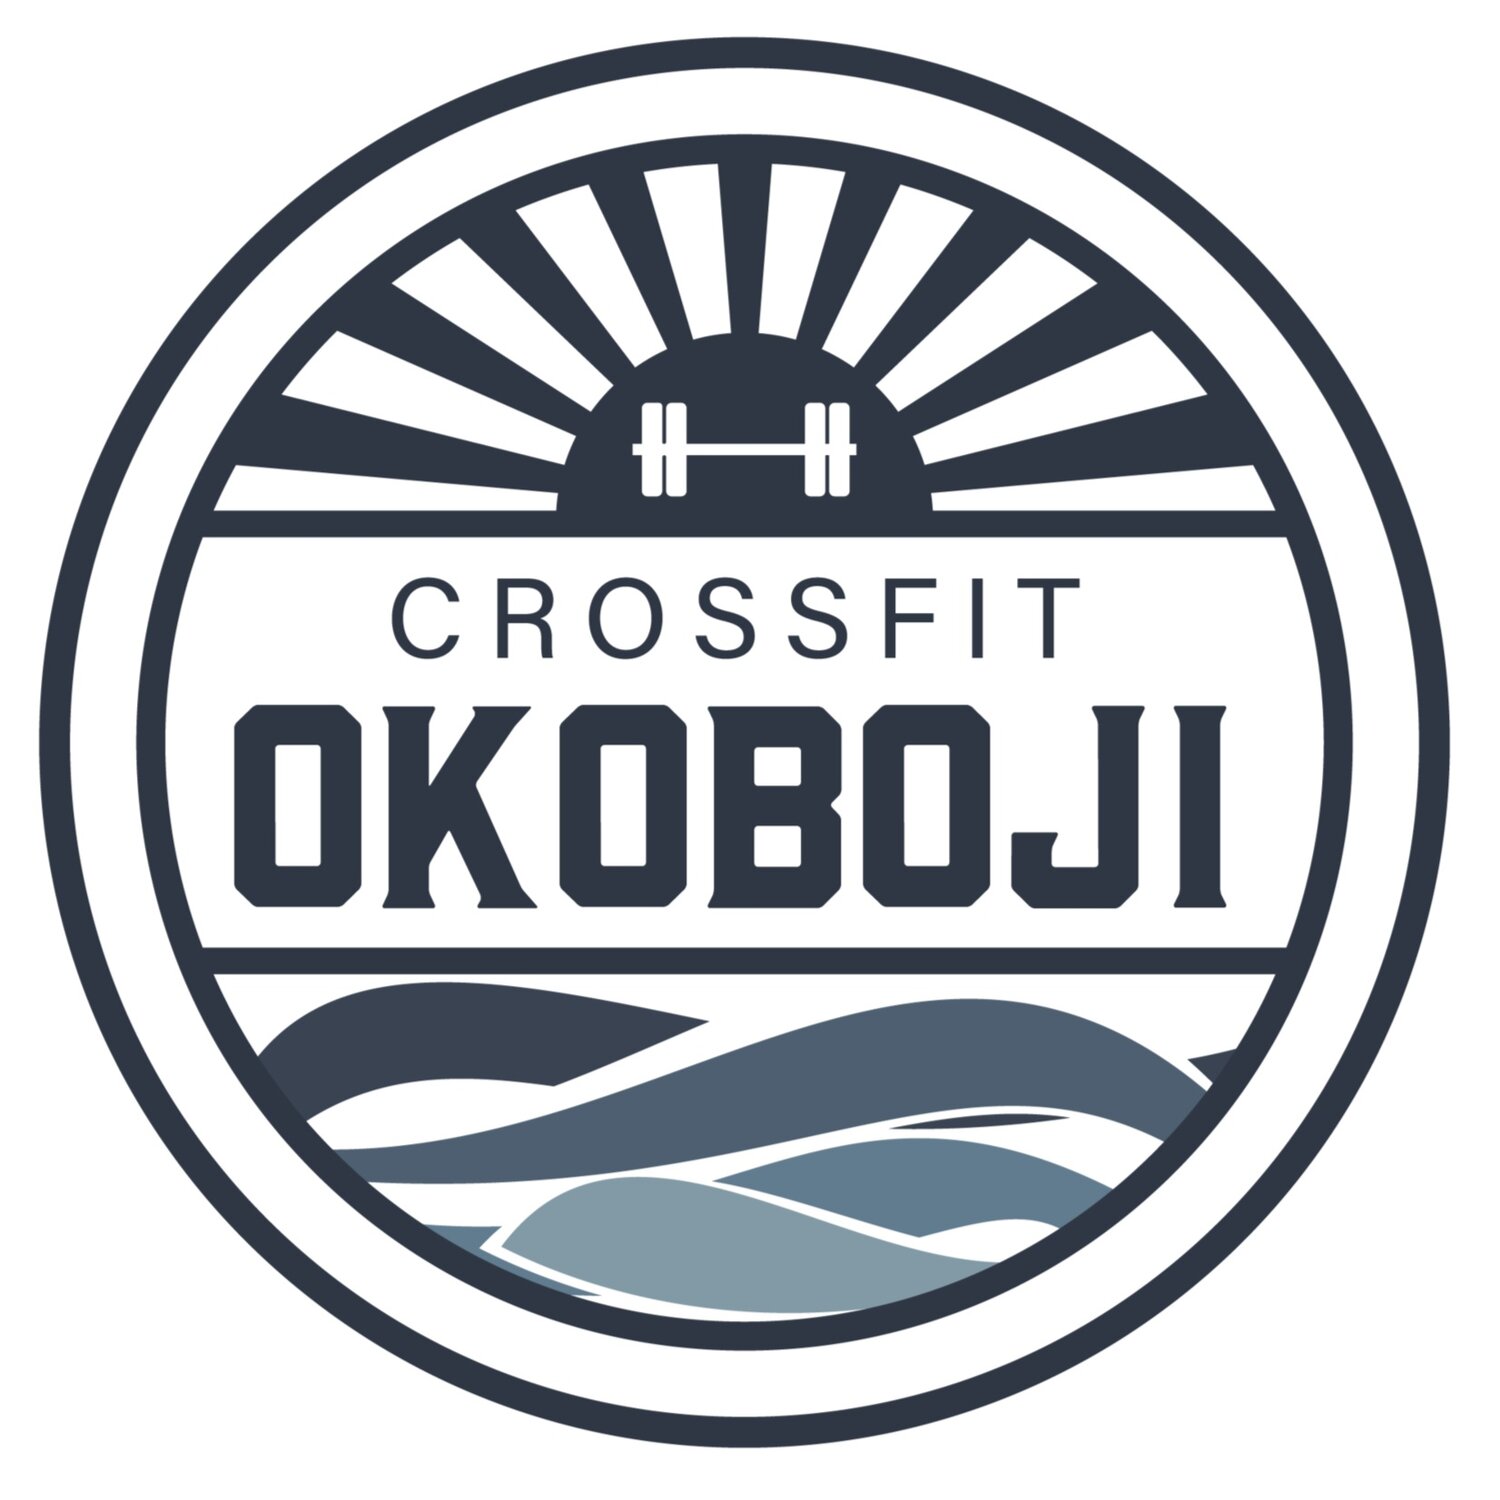 CrossFit Okoboji